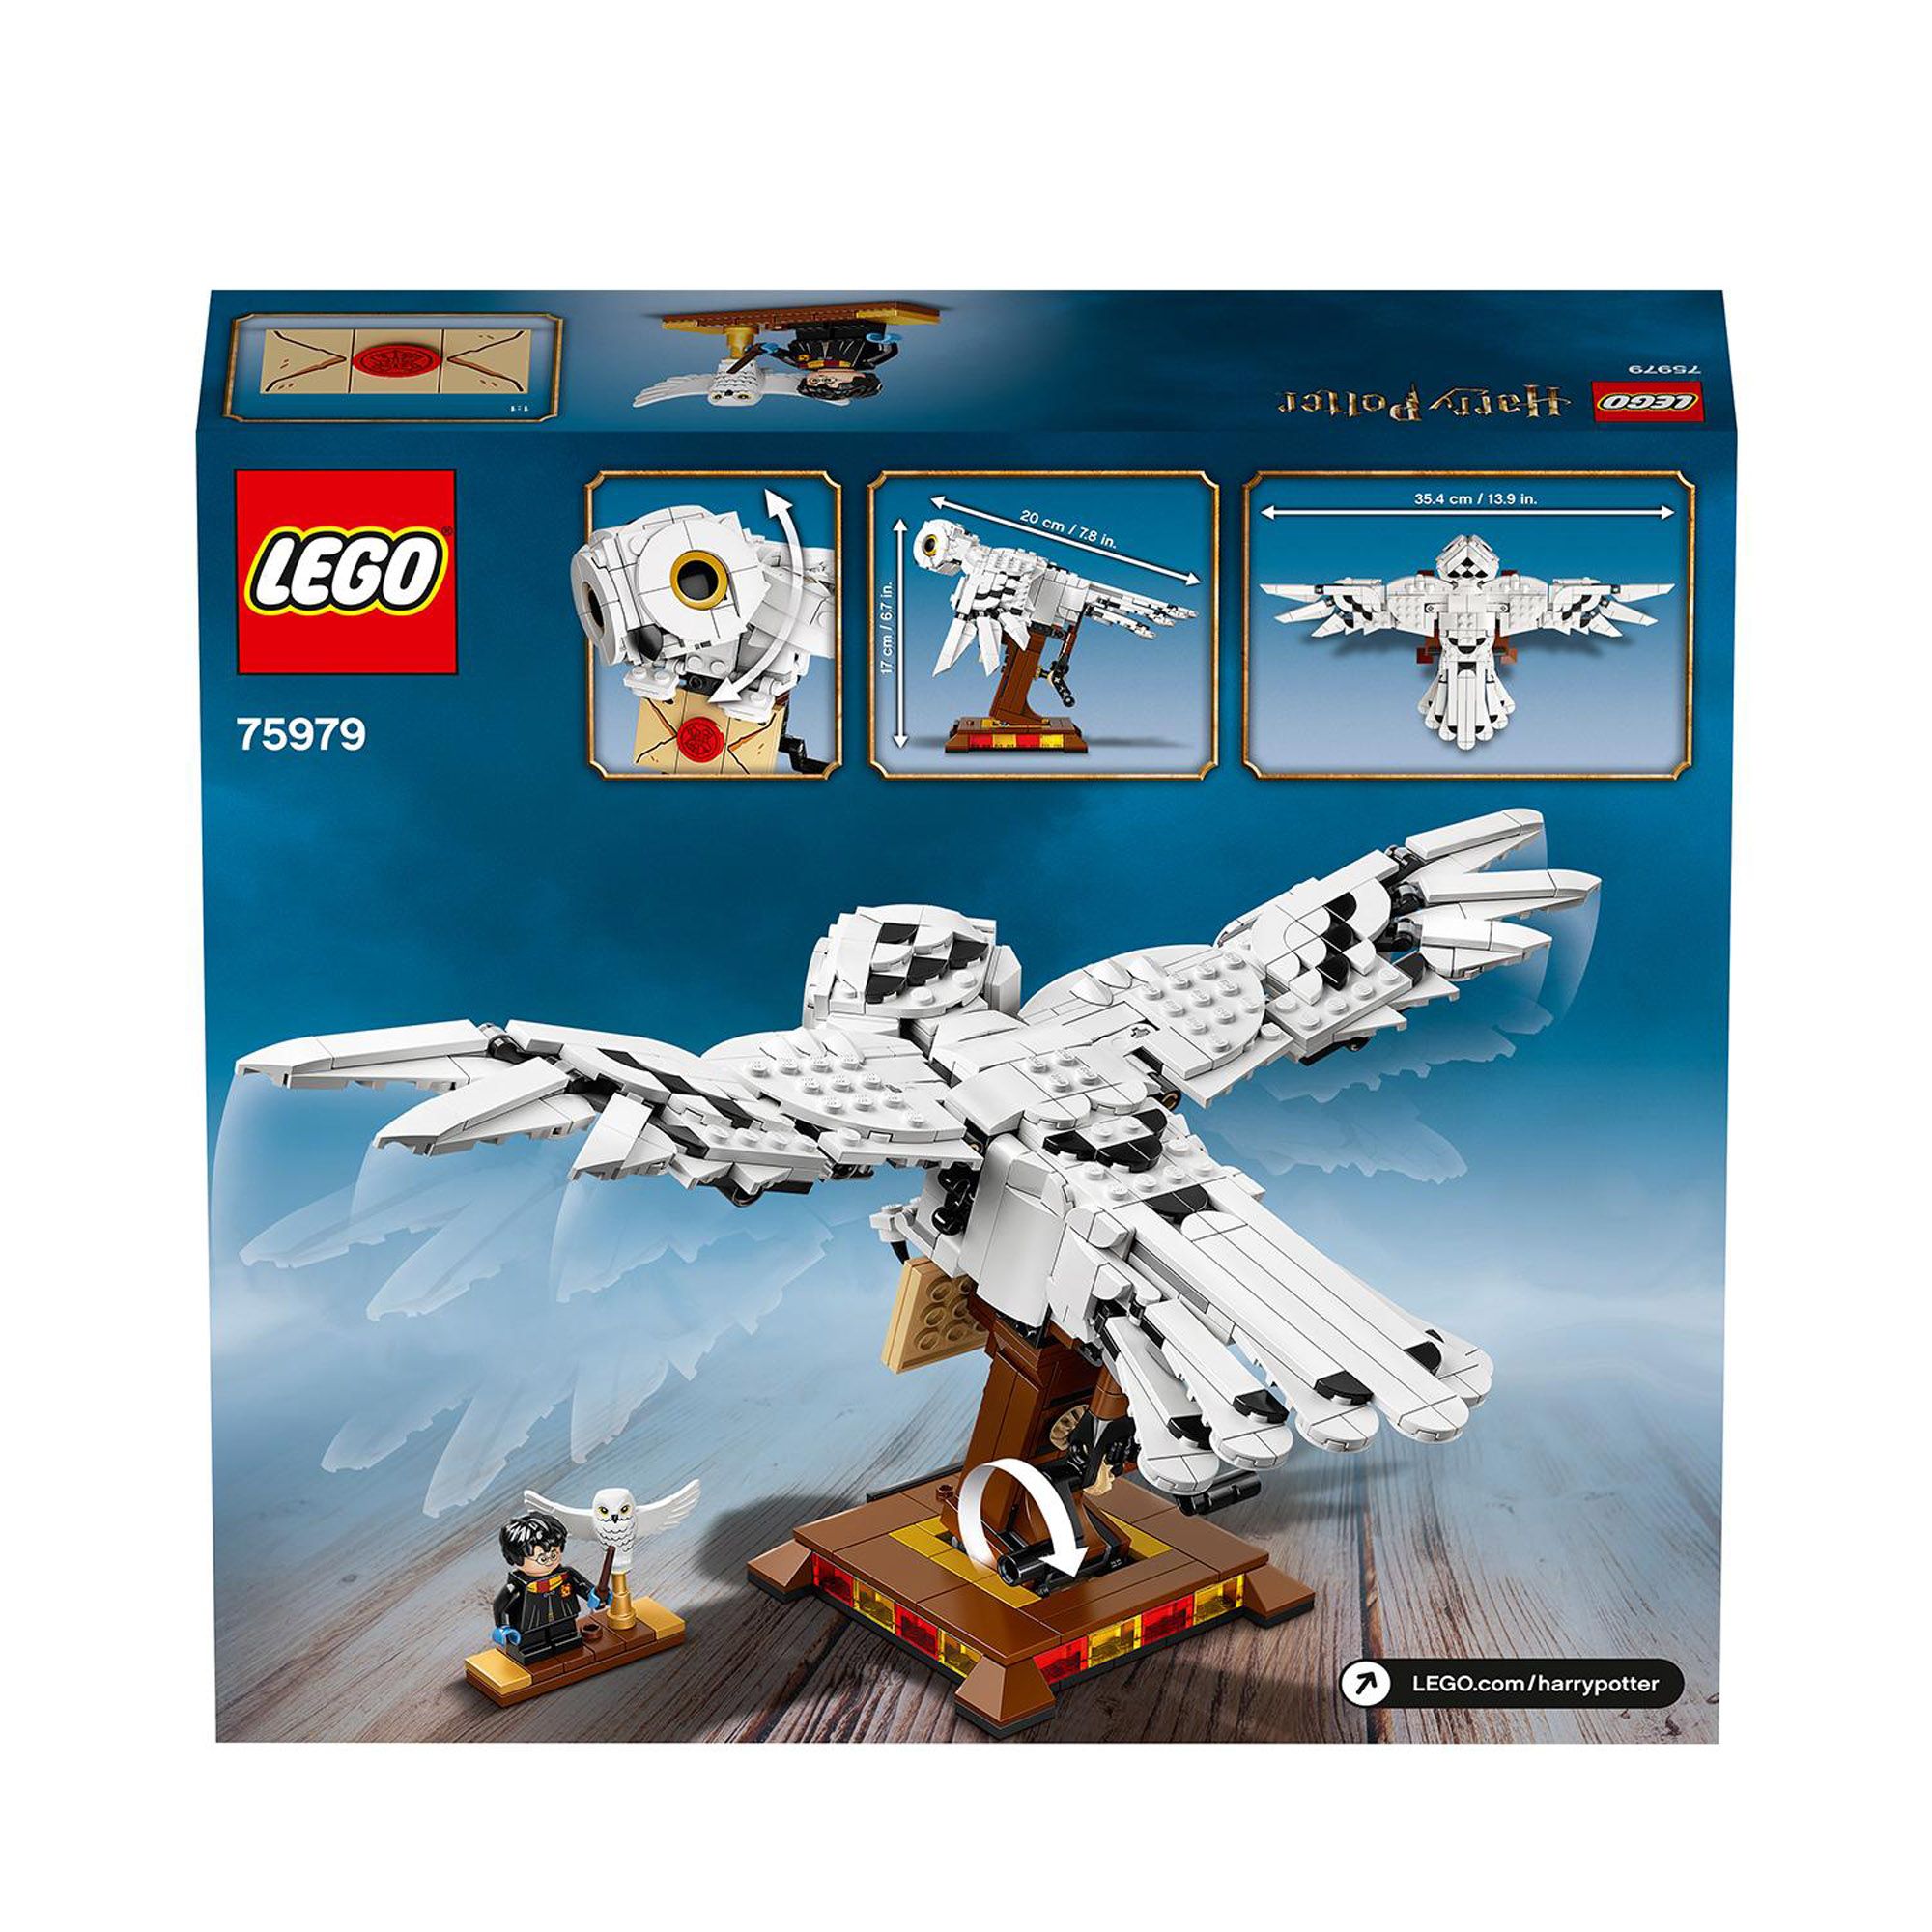 LEGO Harry Potter 75979 Edvige, Modellino della Civetta delle Nevi, da Collezione - Harry Potter, LEGO